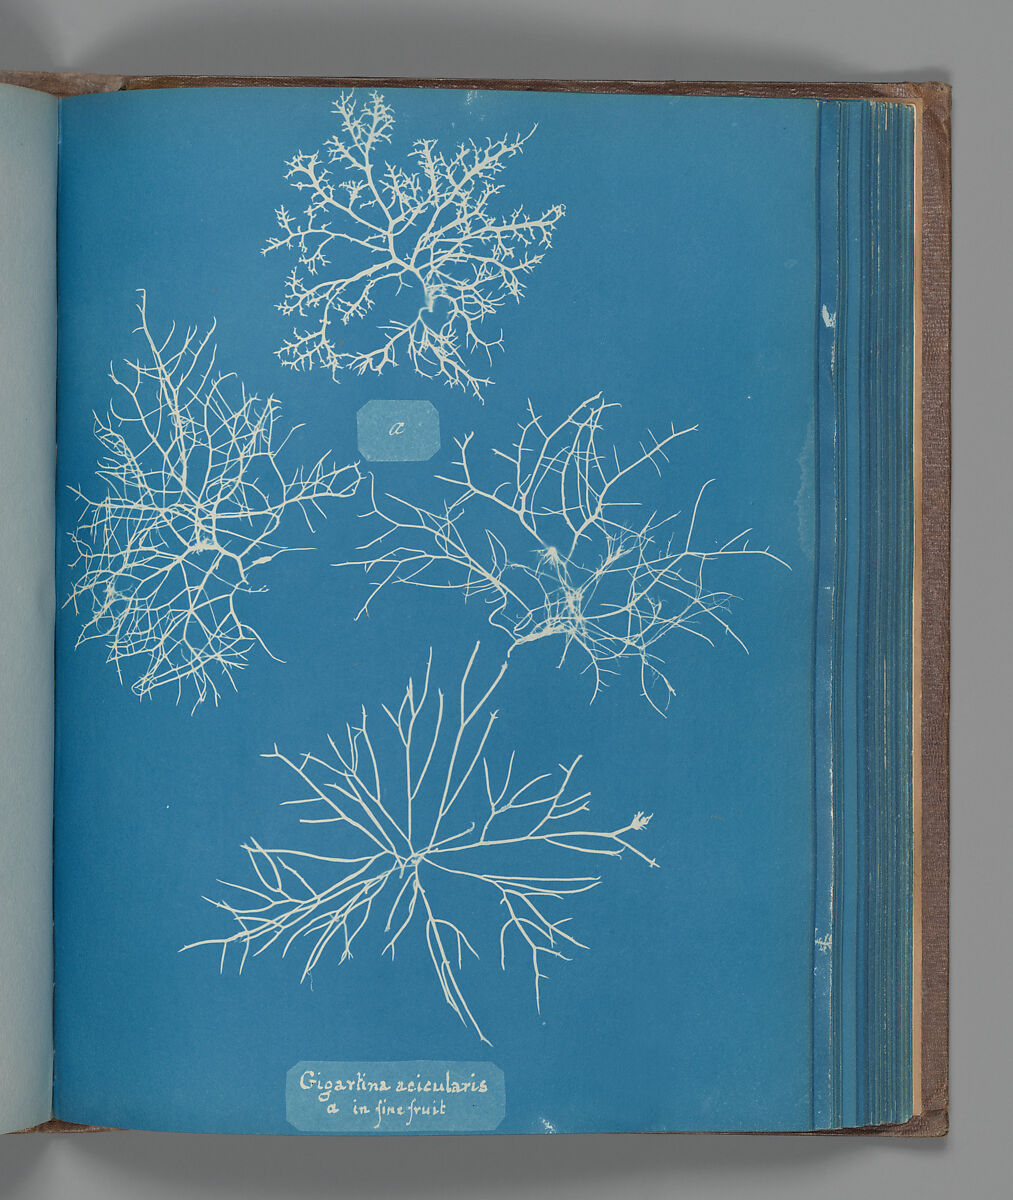 Gigartina acicularis, a in fine fruit, Anna Atkins (British, 1799–1871), Cyanotype 